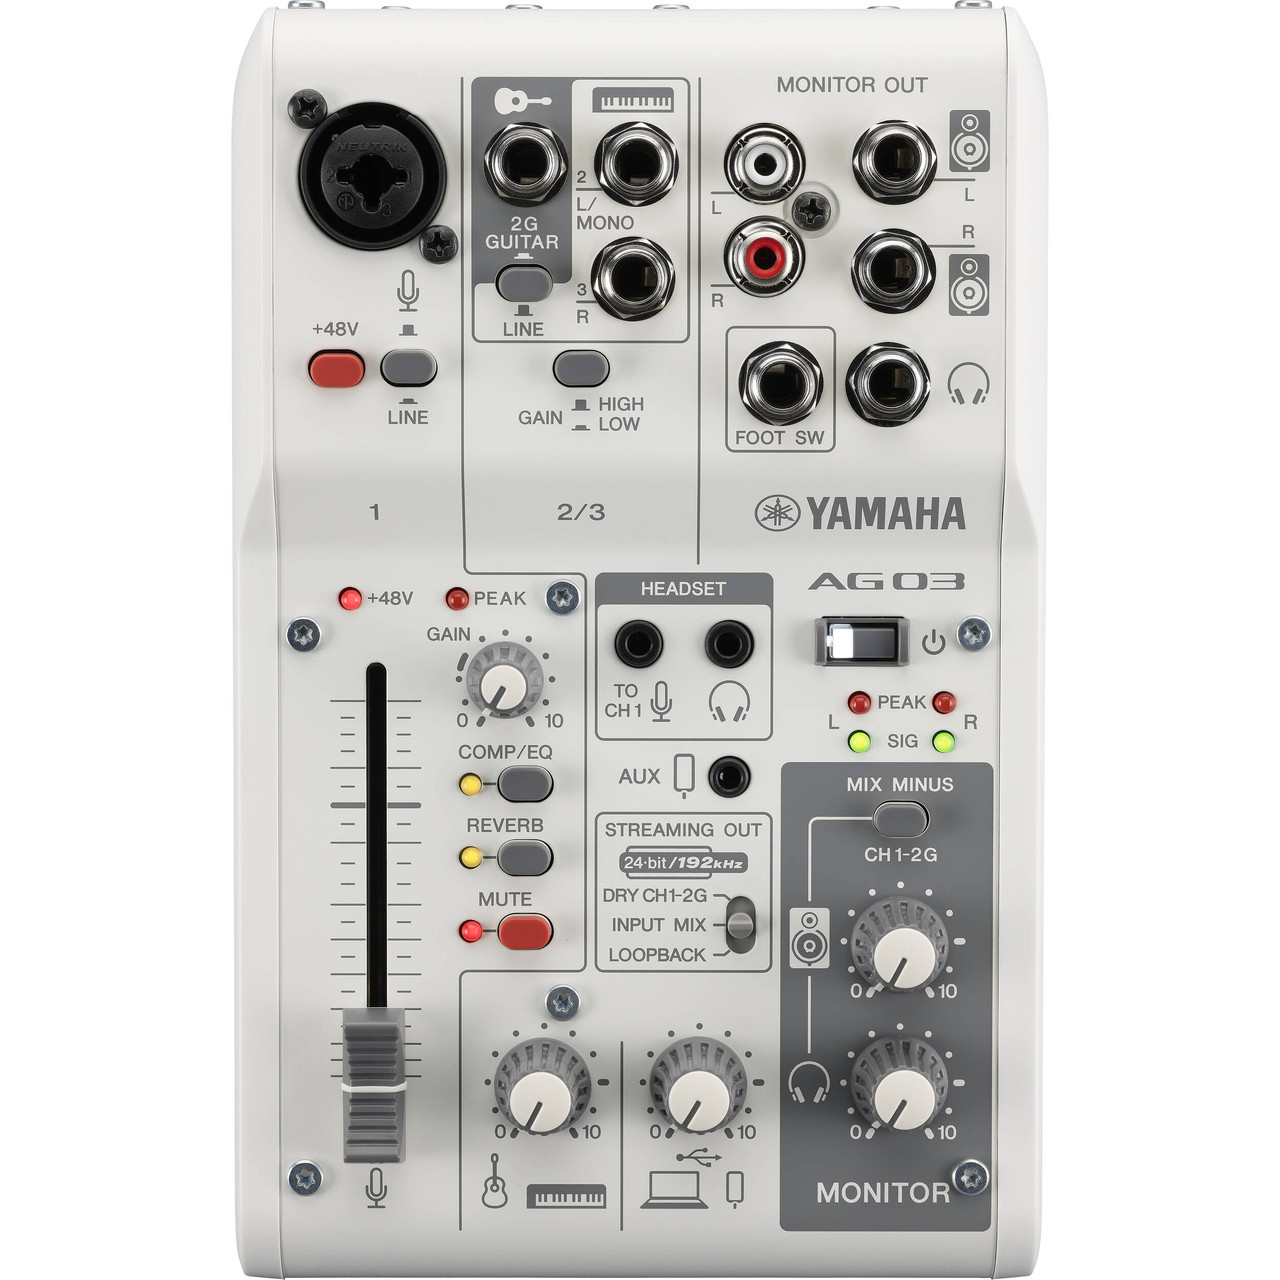 Yamaha AG03 MKII Mixer & Audio Interface